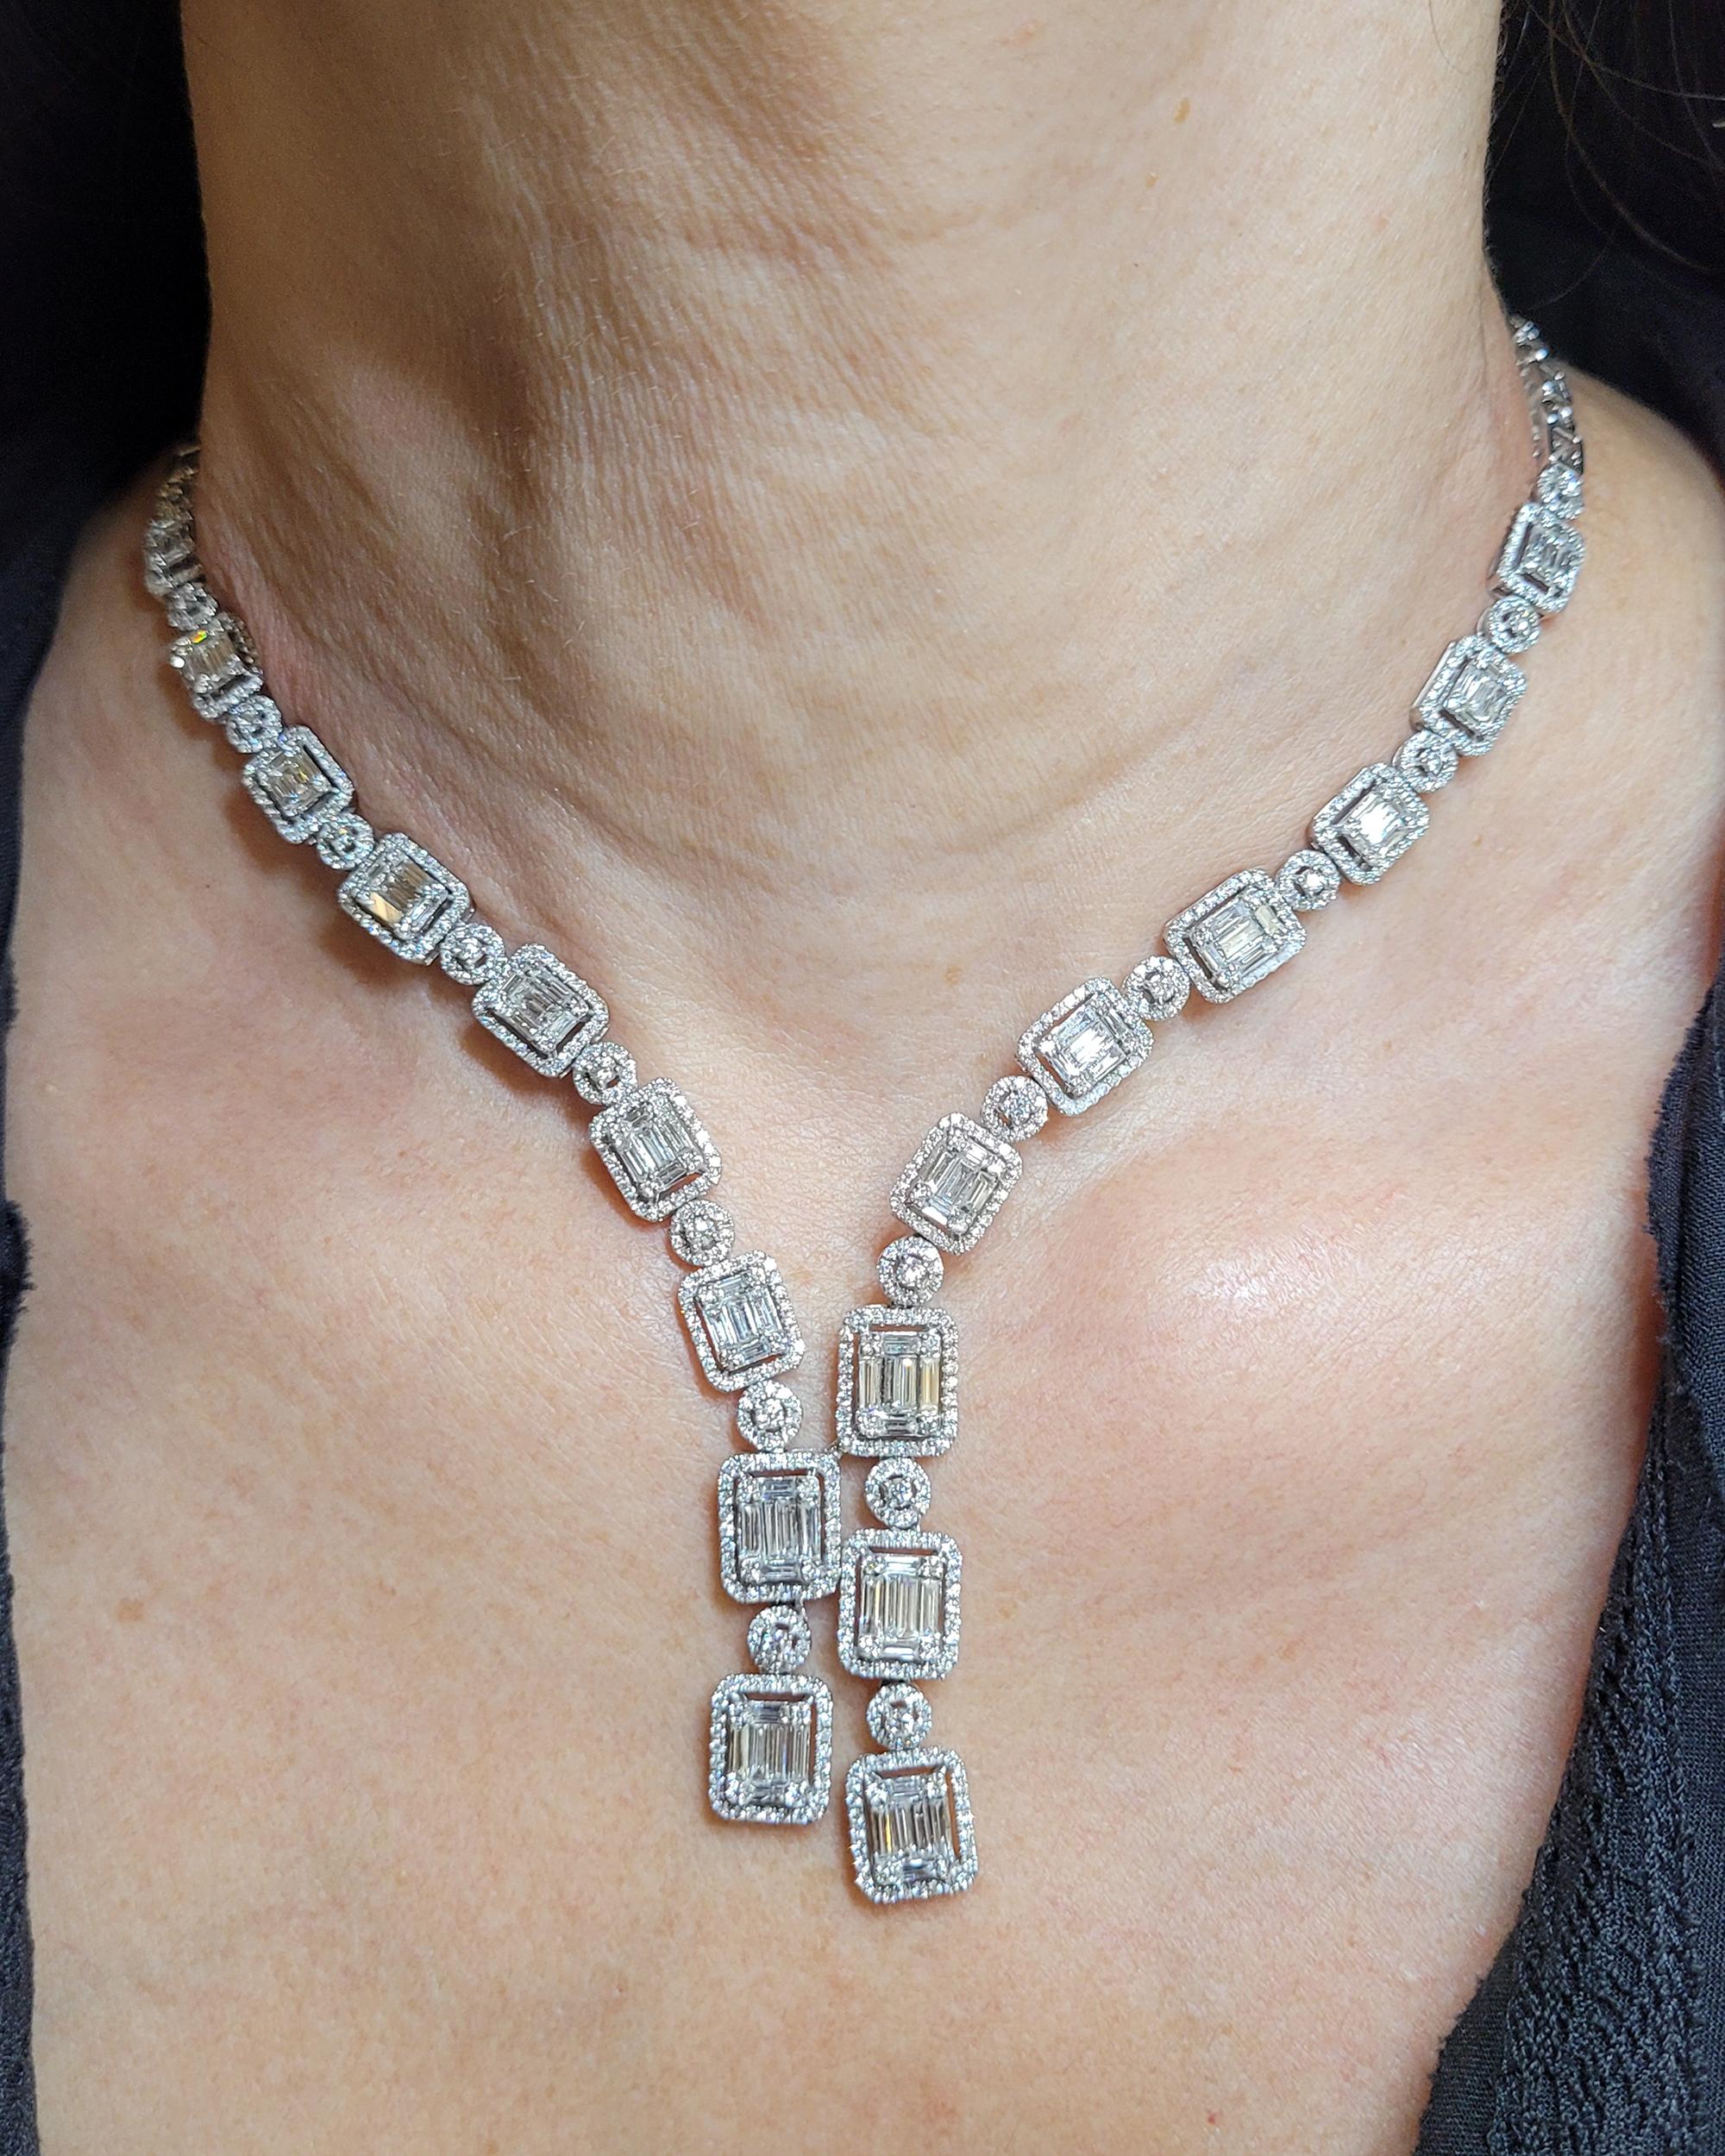 Wie ein tiefes Dekolleté, das Ihr Dekolleté elegant hervorhebt, klingt diese asymmetrische Diamant-Kaskaden-Halskette von Spectra Fine Jewelry aus dem Jahr 2020 wie die synkopierten Jazznoten der opulenten Roaring 20s vor hundert Jahren. Das Stück